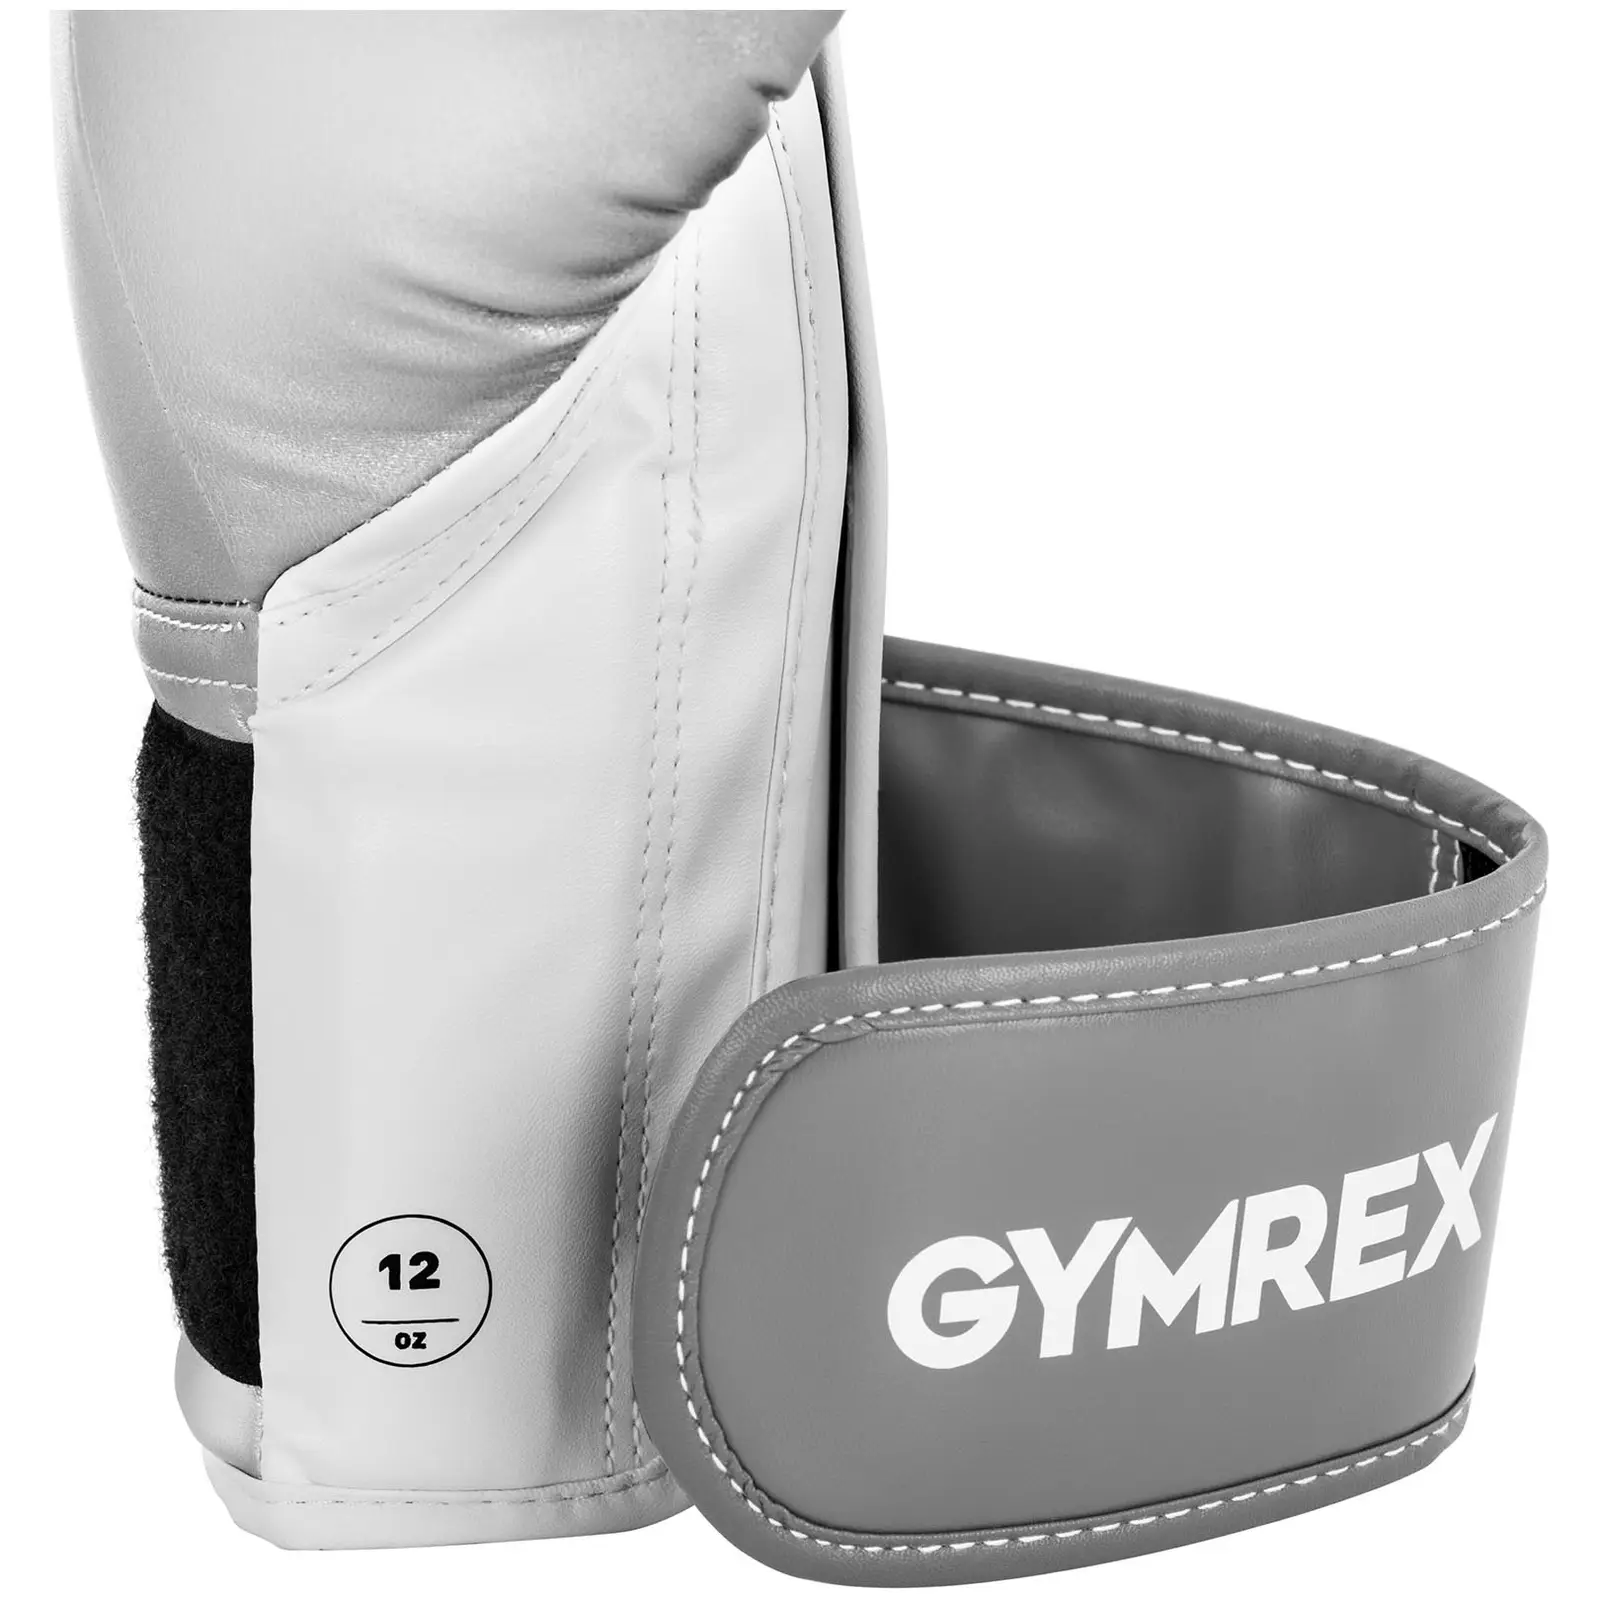 Boxerské rukavice - 12 oz - kovově stříbrné a bílé